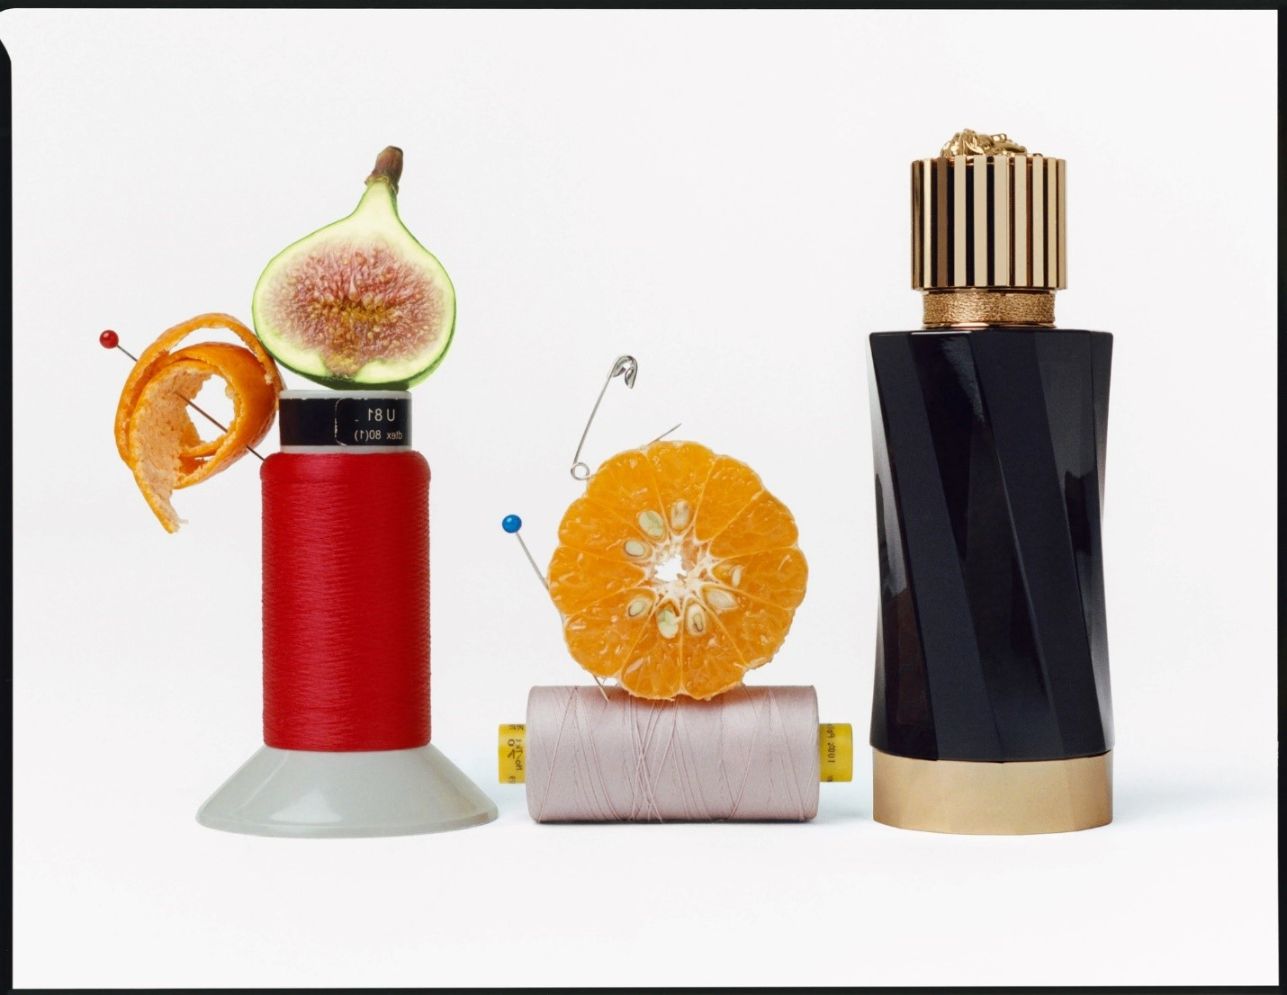 Atelier Versace 5 Atelier Versace và nghệ thuật may đo hương thơm